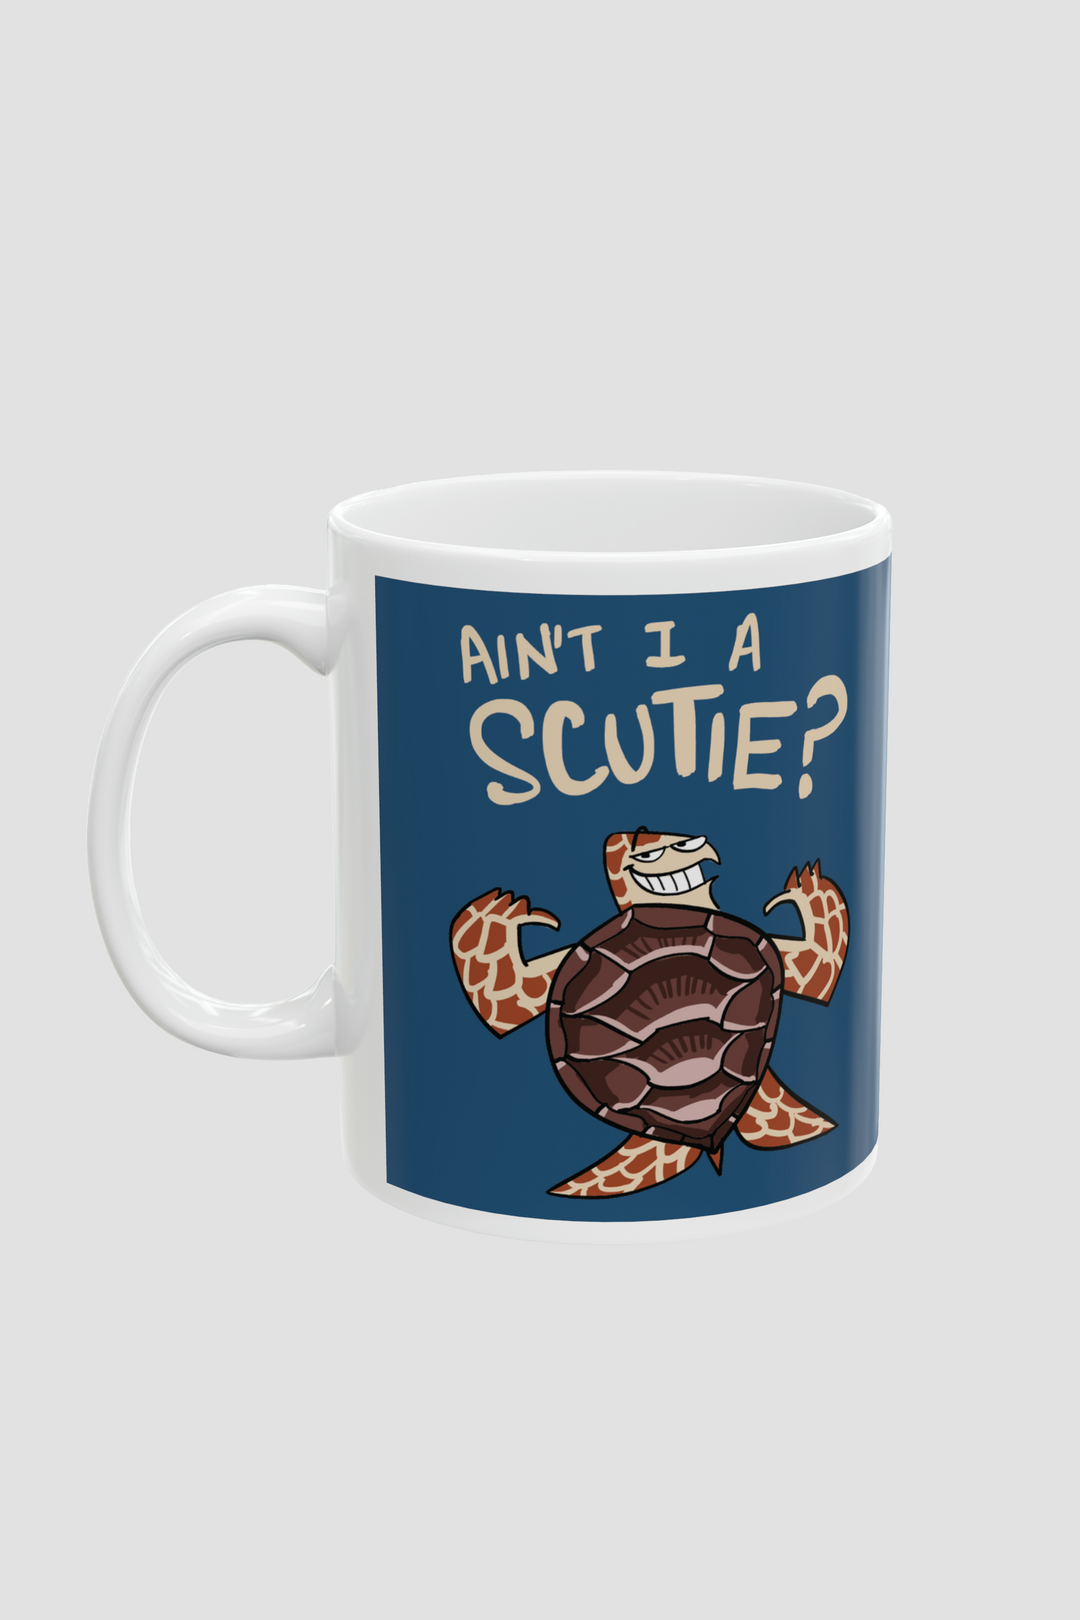 Scutie Mug